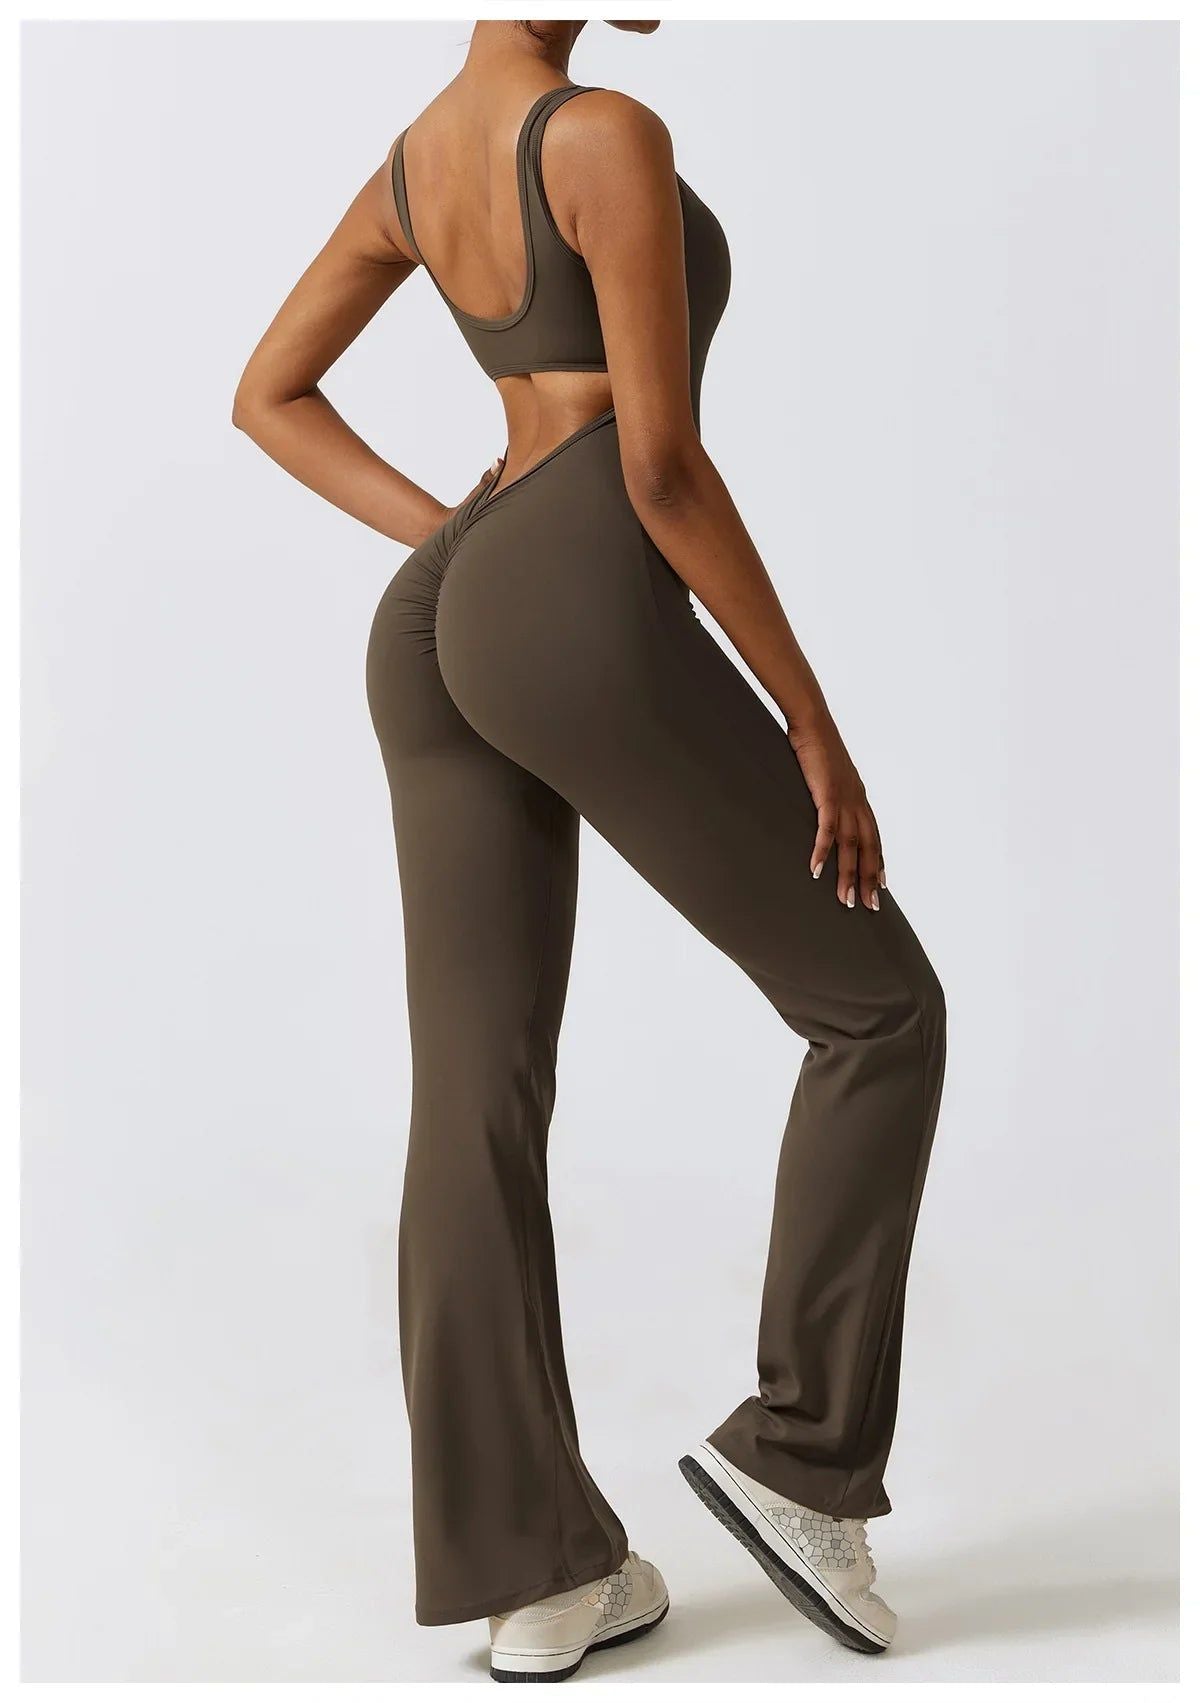 VogueFlare - V-Back Flared Viral Backless Jumpsuit - Luceroclub.com